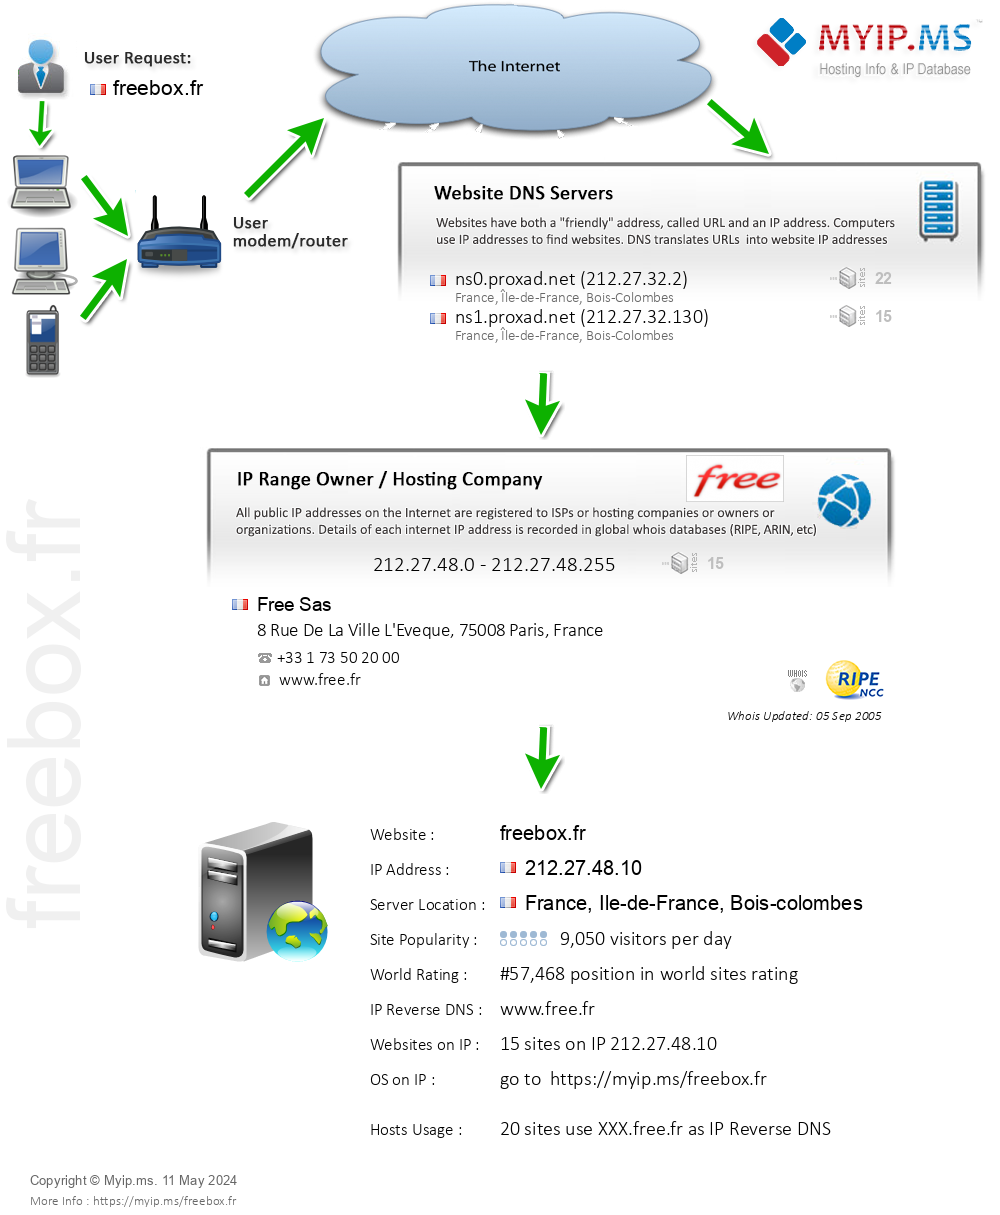 Freebox.fr - Website Hosting Visual IP Diagram